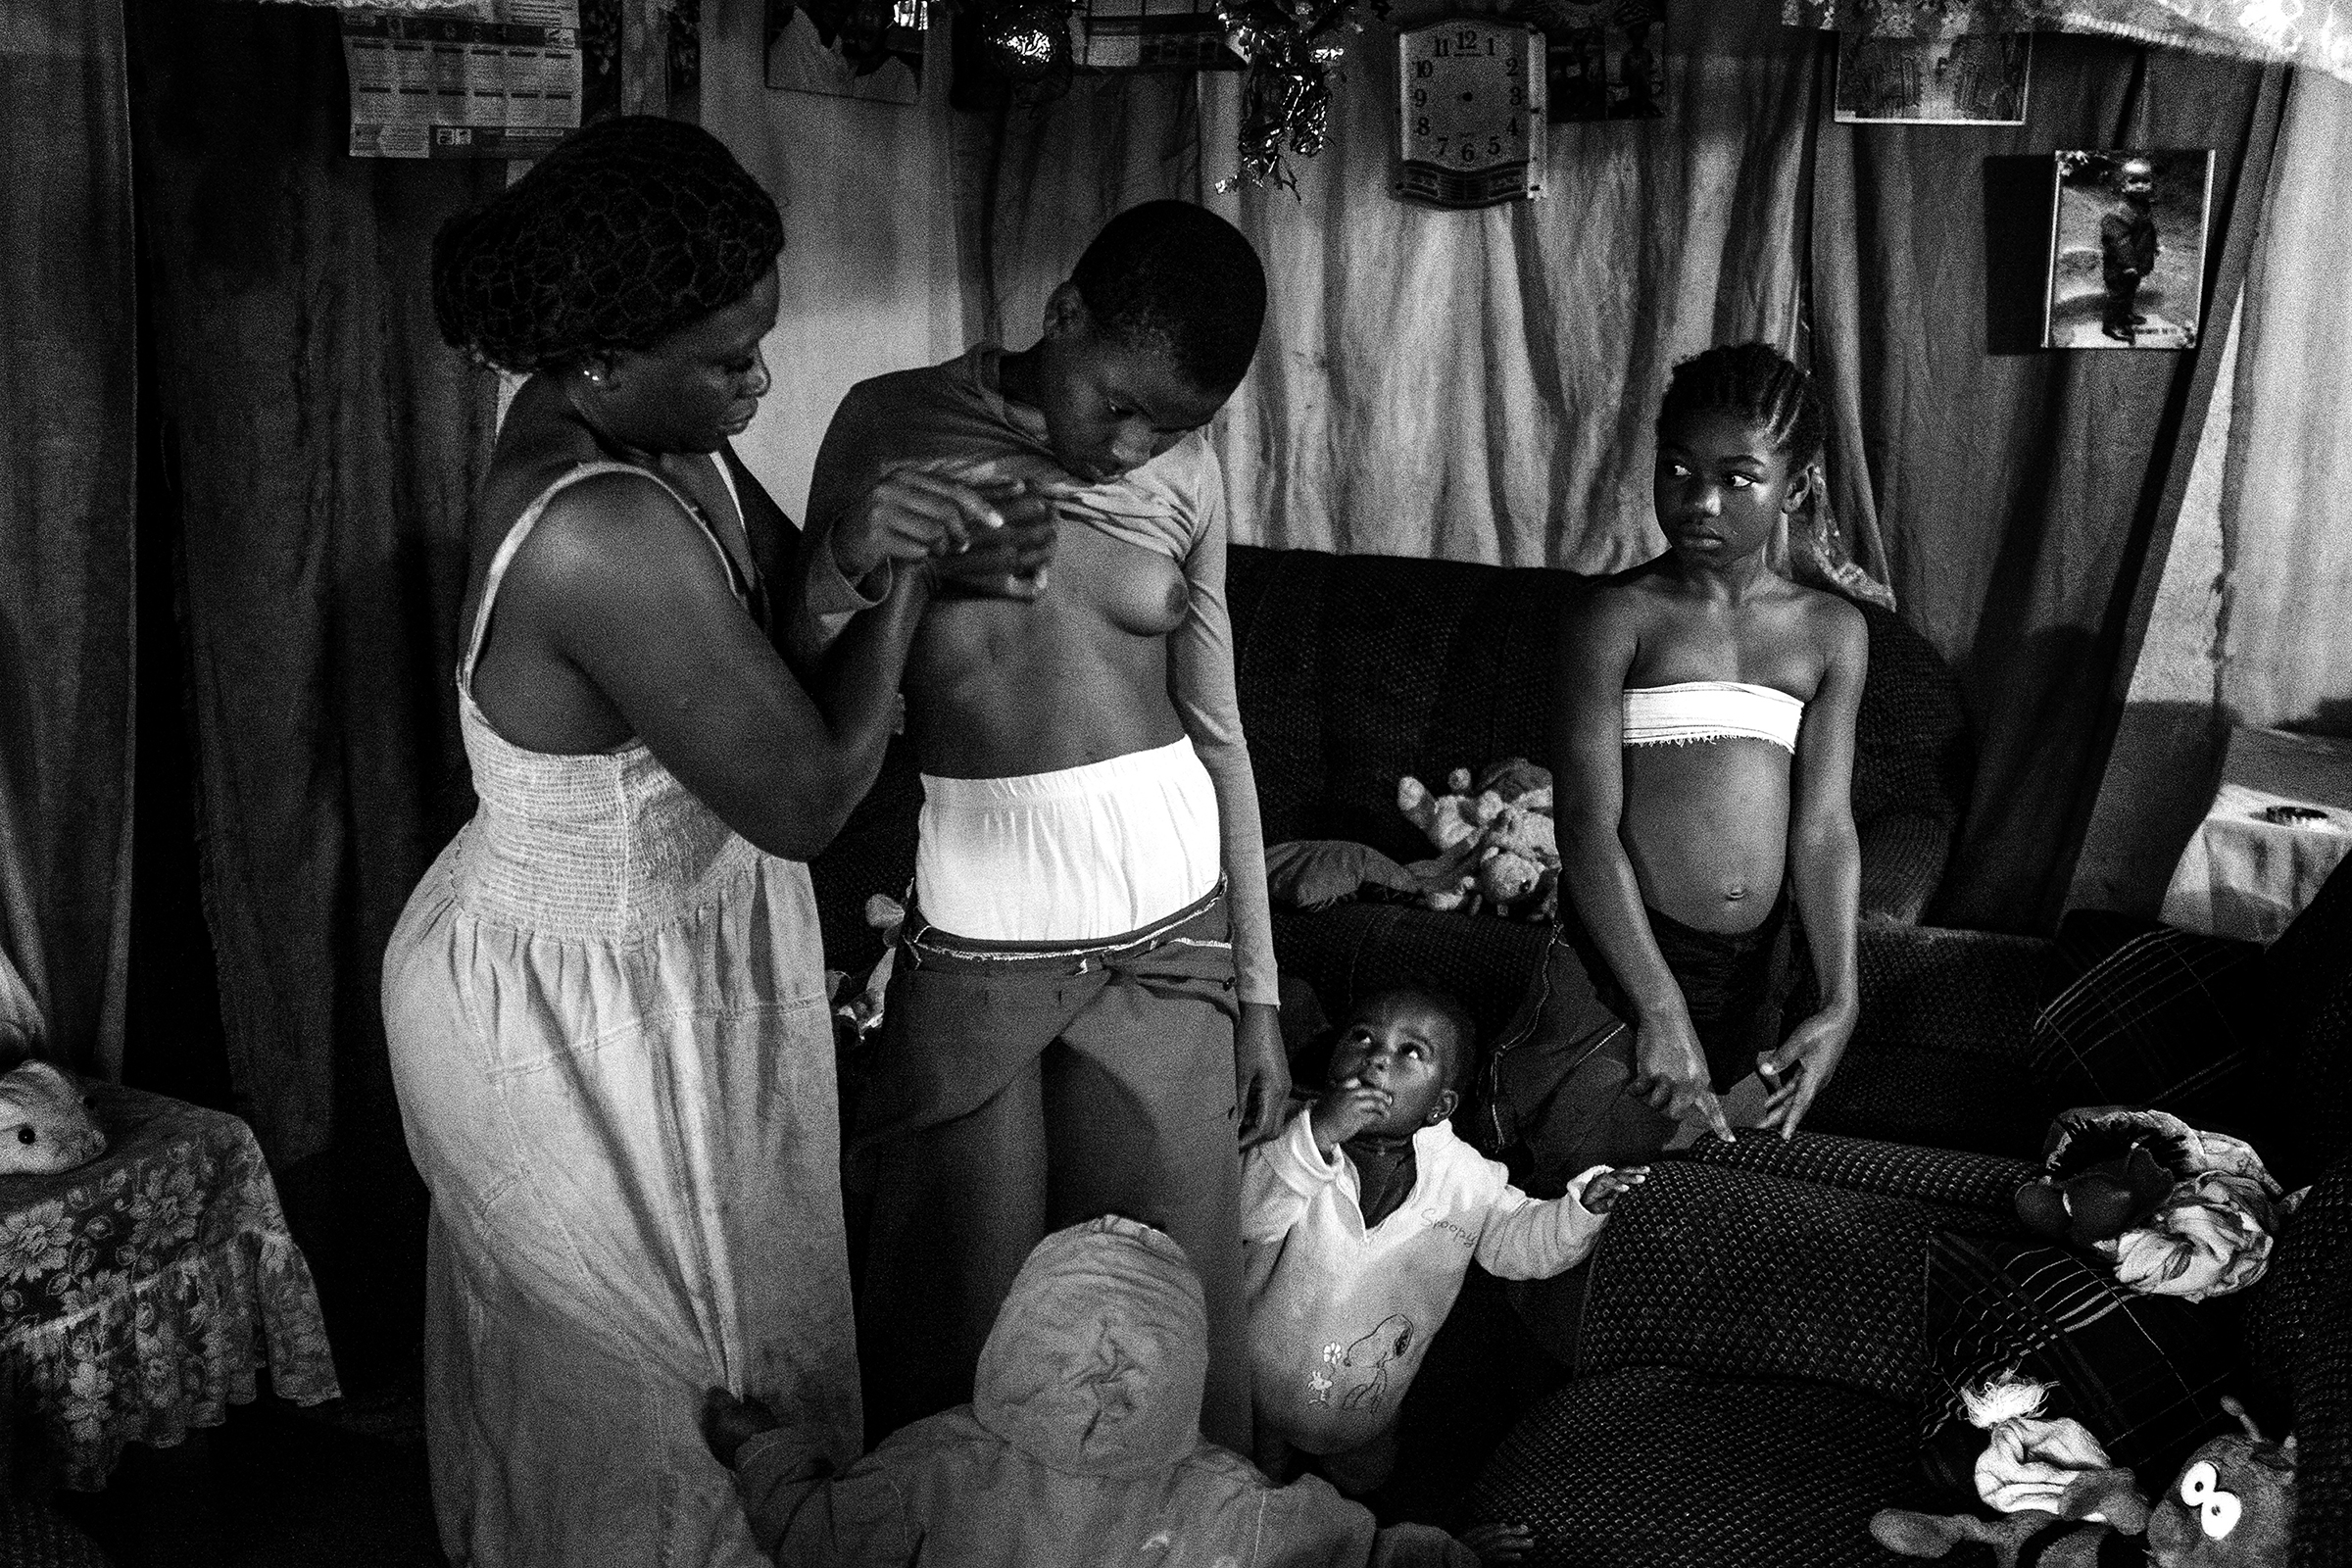 Хеба Хамис, Египет

Фотограф-документалист запечатлела процесс разглаживания груди в Камеруне &mdash; традиционную в стране практику, направленную на предотвращение развития молочных желез у молодых девушек. Такой метод изменения физических данных широко используется в Камеруне для защиты женской половины населения от сексуального насилия.
